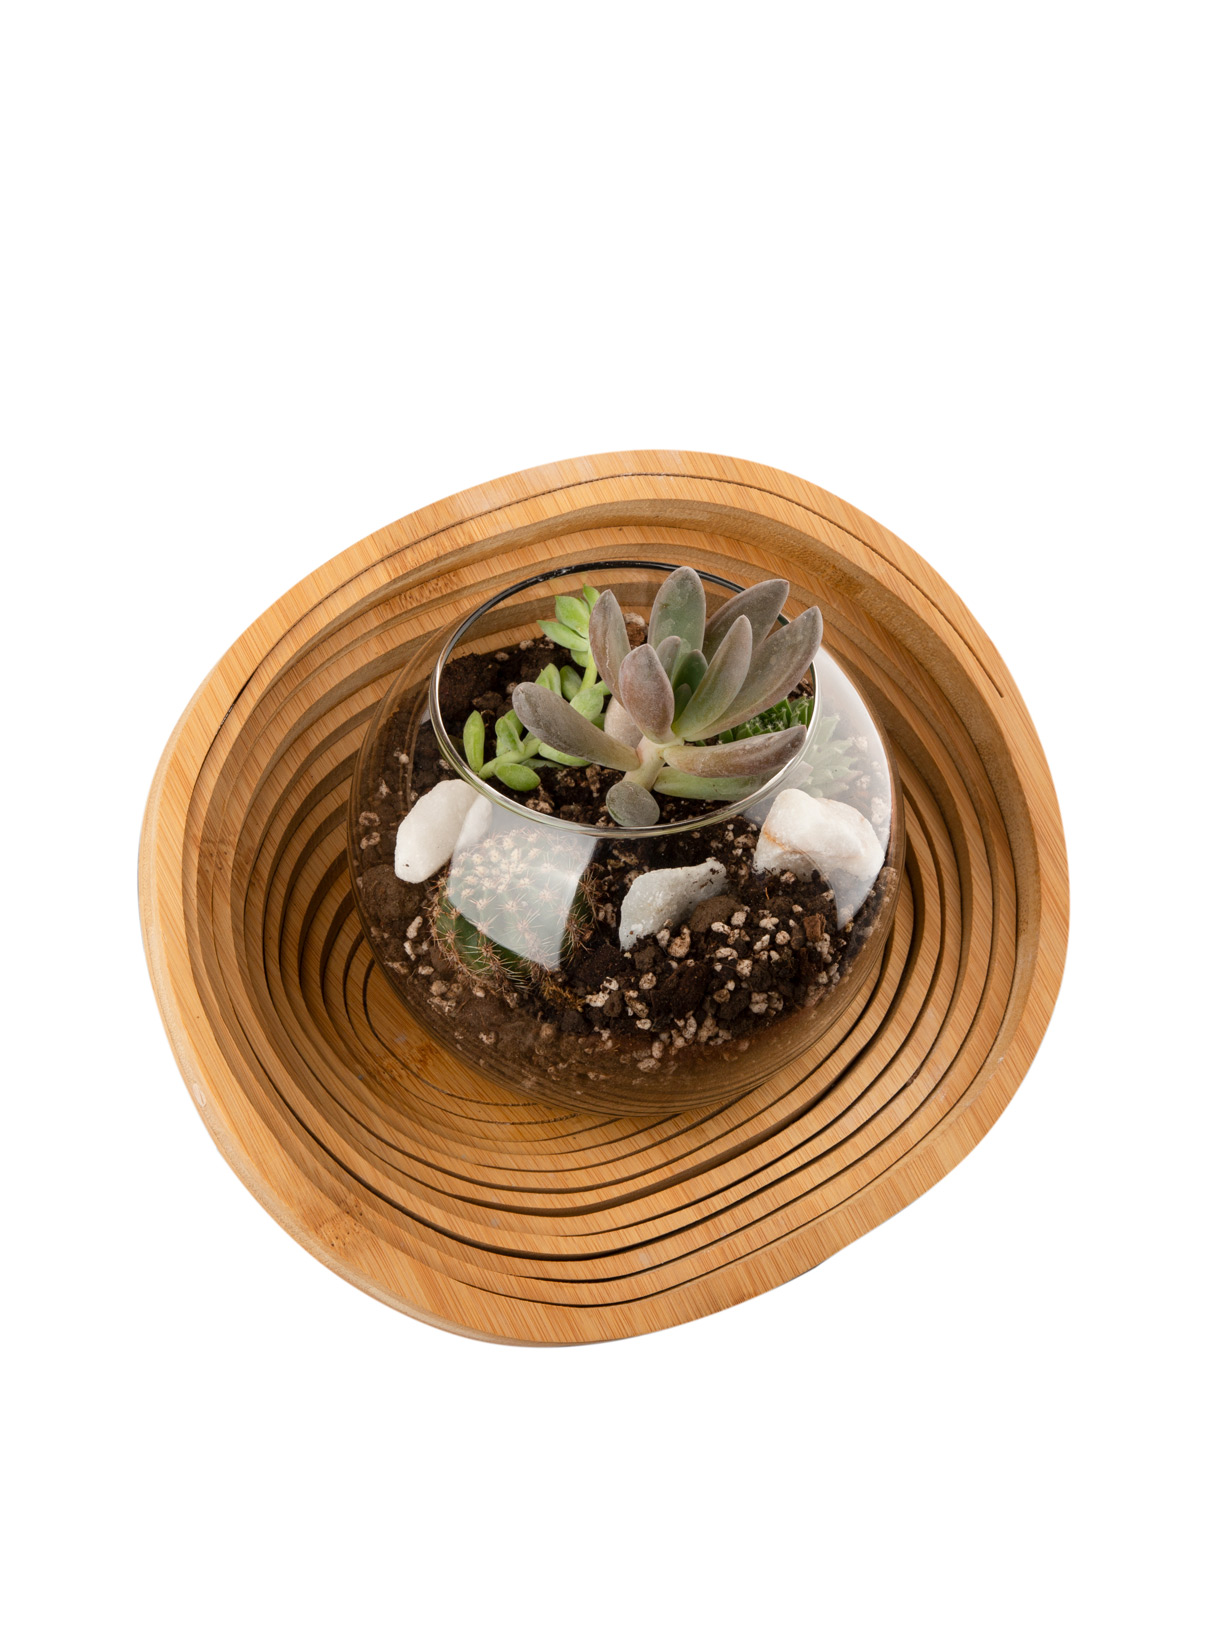 Florarium `Aries` with succulents